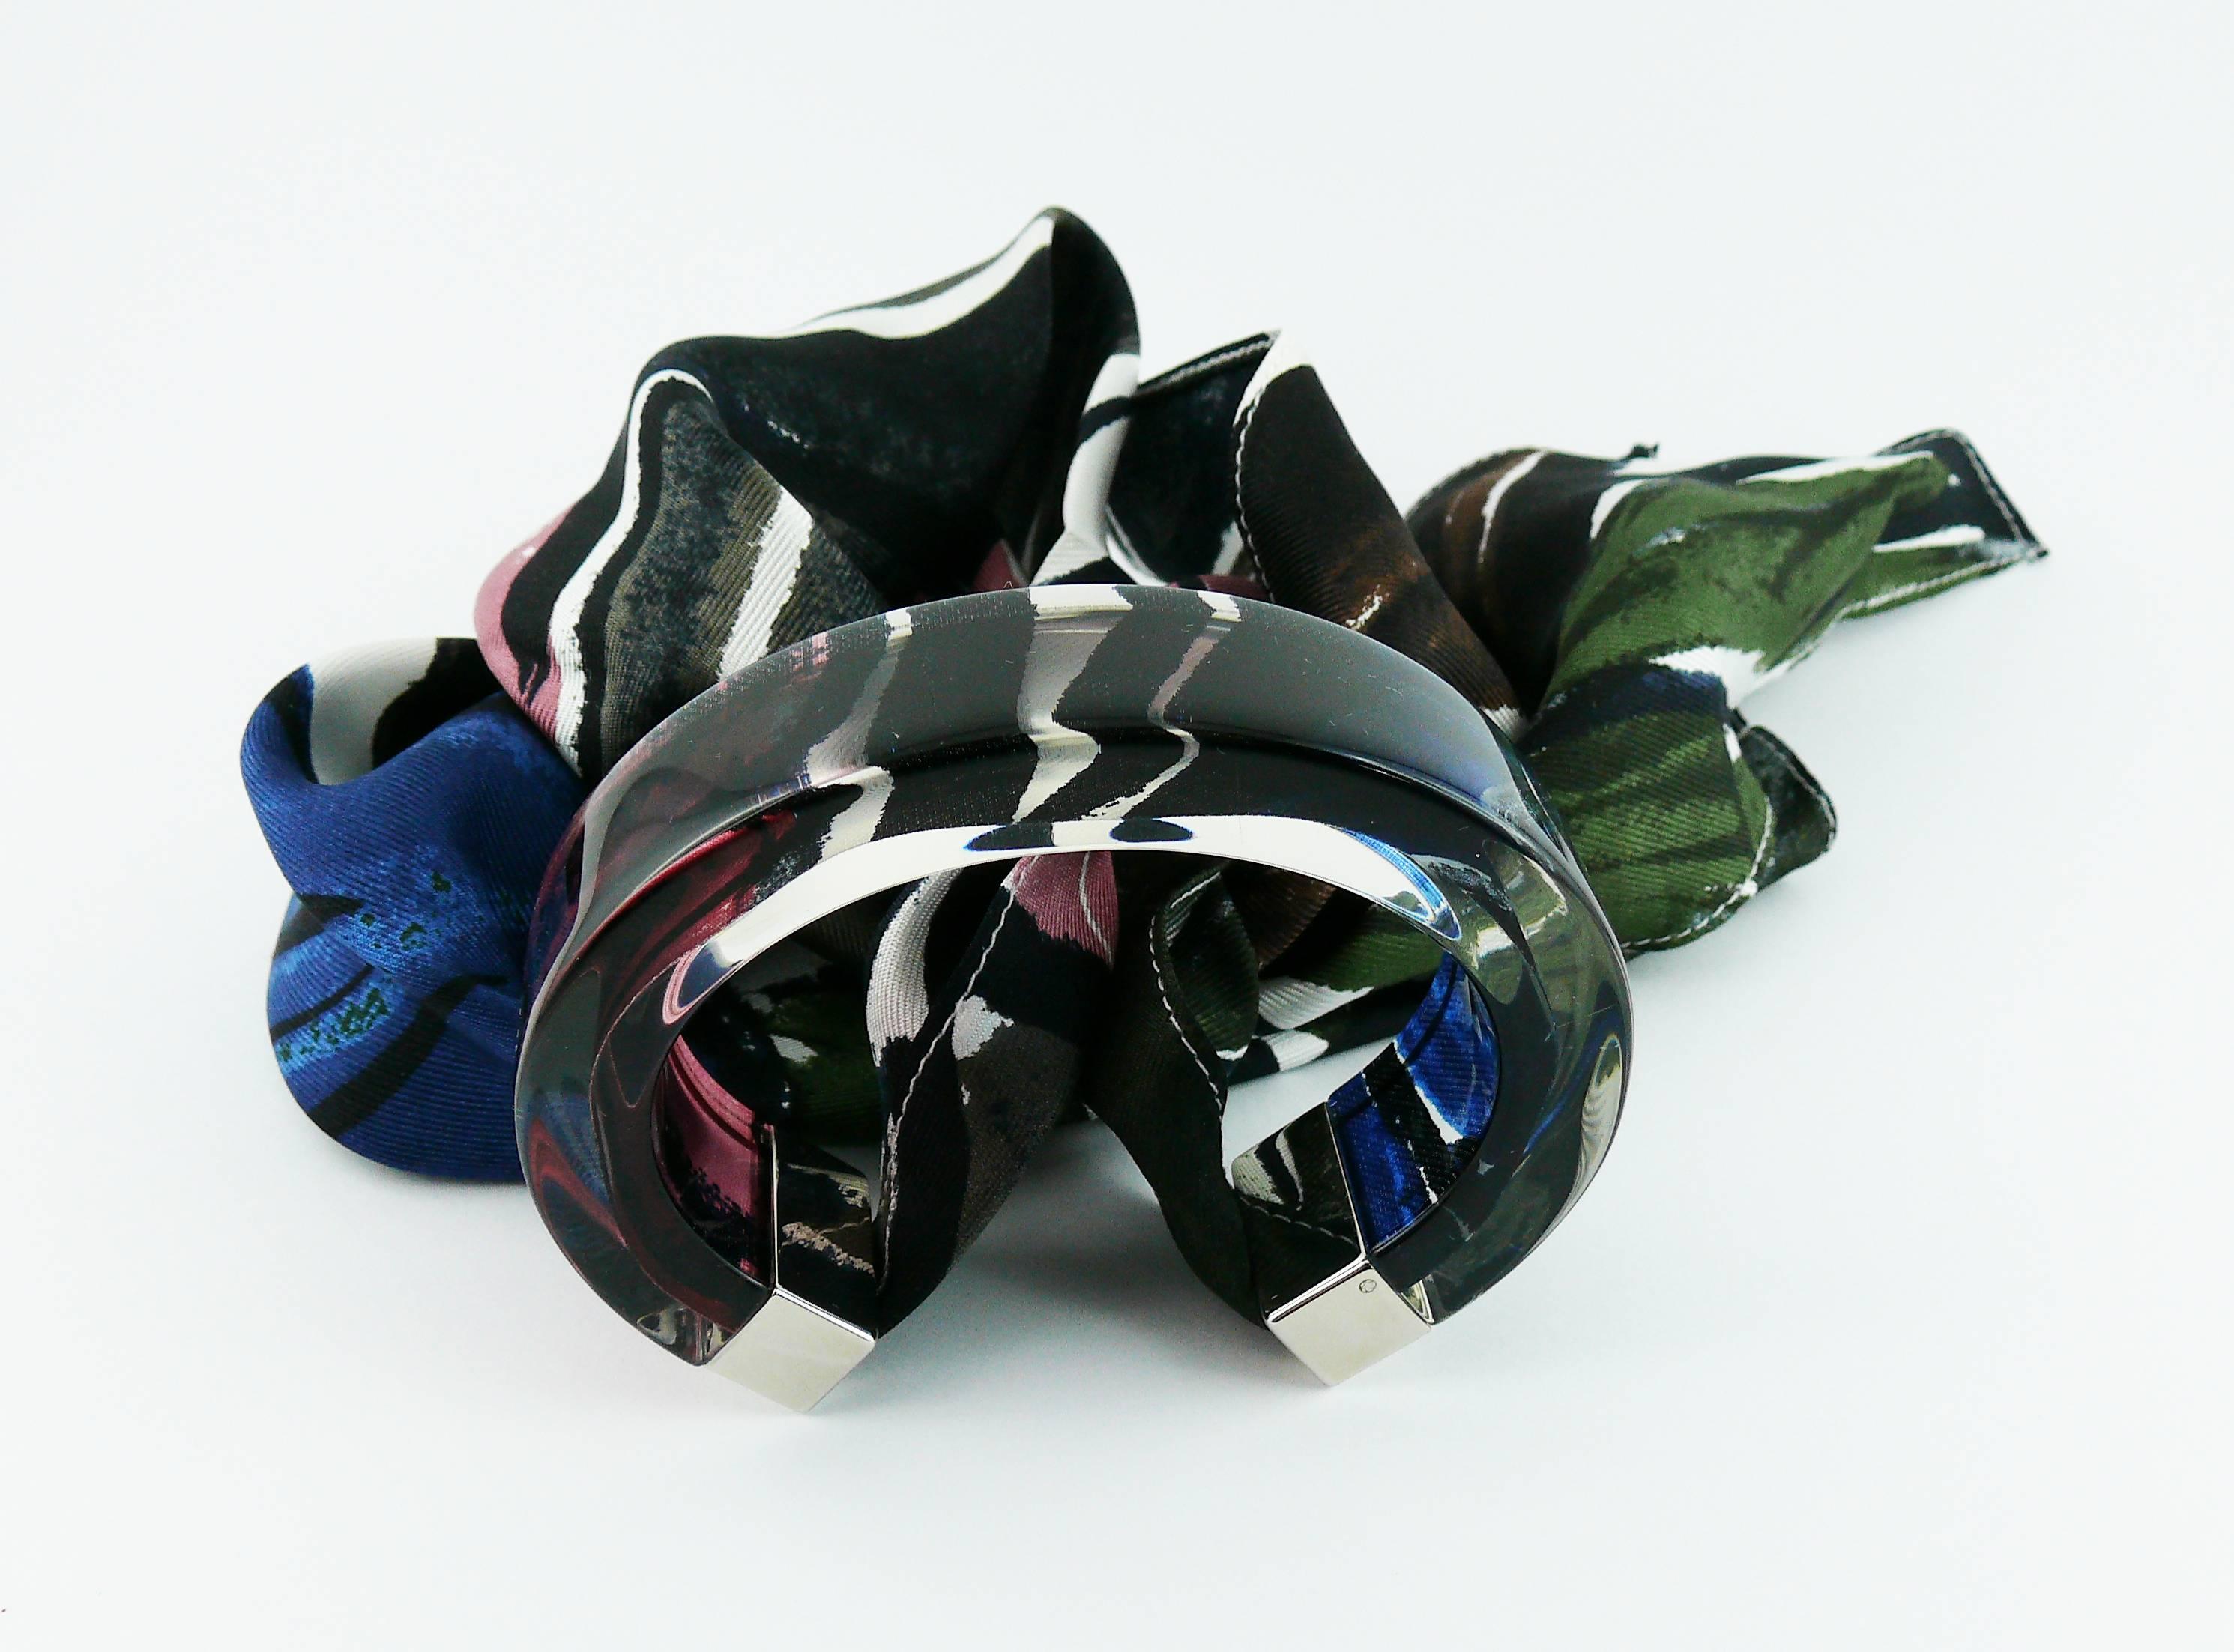 Bracelet CHRISTIAN DIOR en lucite transparente avec un foulard en soie multicolore attaché.

Embossé DIOR.

Mesures indicatives : longueur intérieure maximale d'environ 5,9 cm (2,32 pouces) / largeur du bracelet en résine d'environ 1,9 cm (0,75